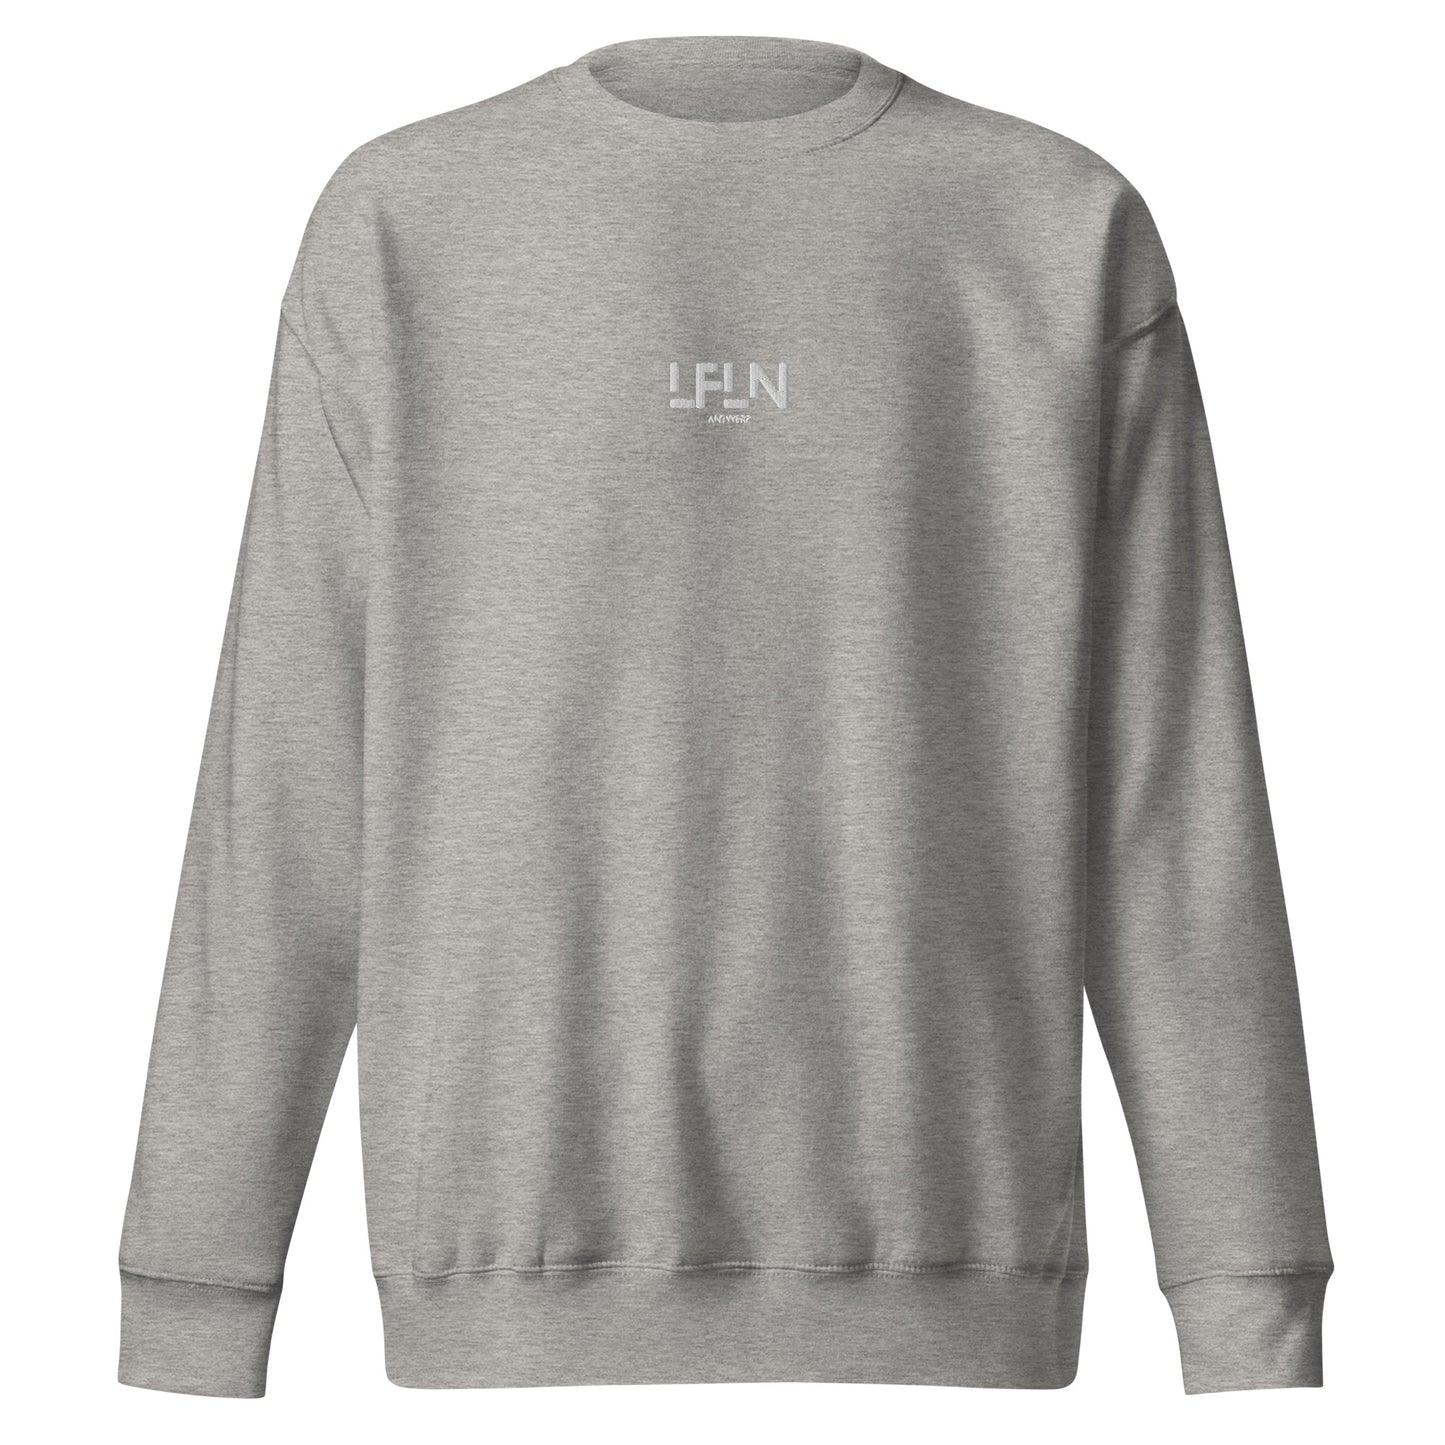 LFLN Sweater - White Unisex